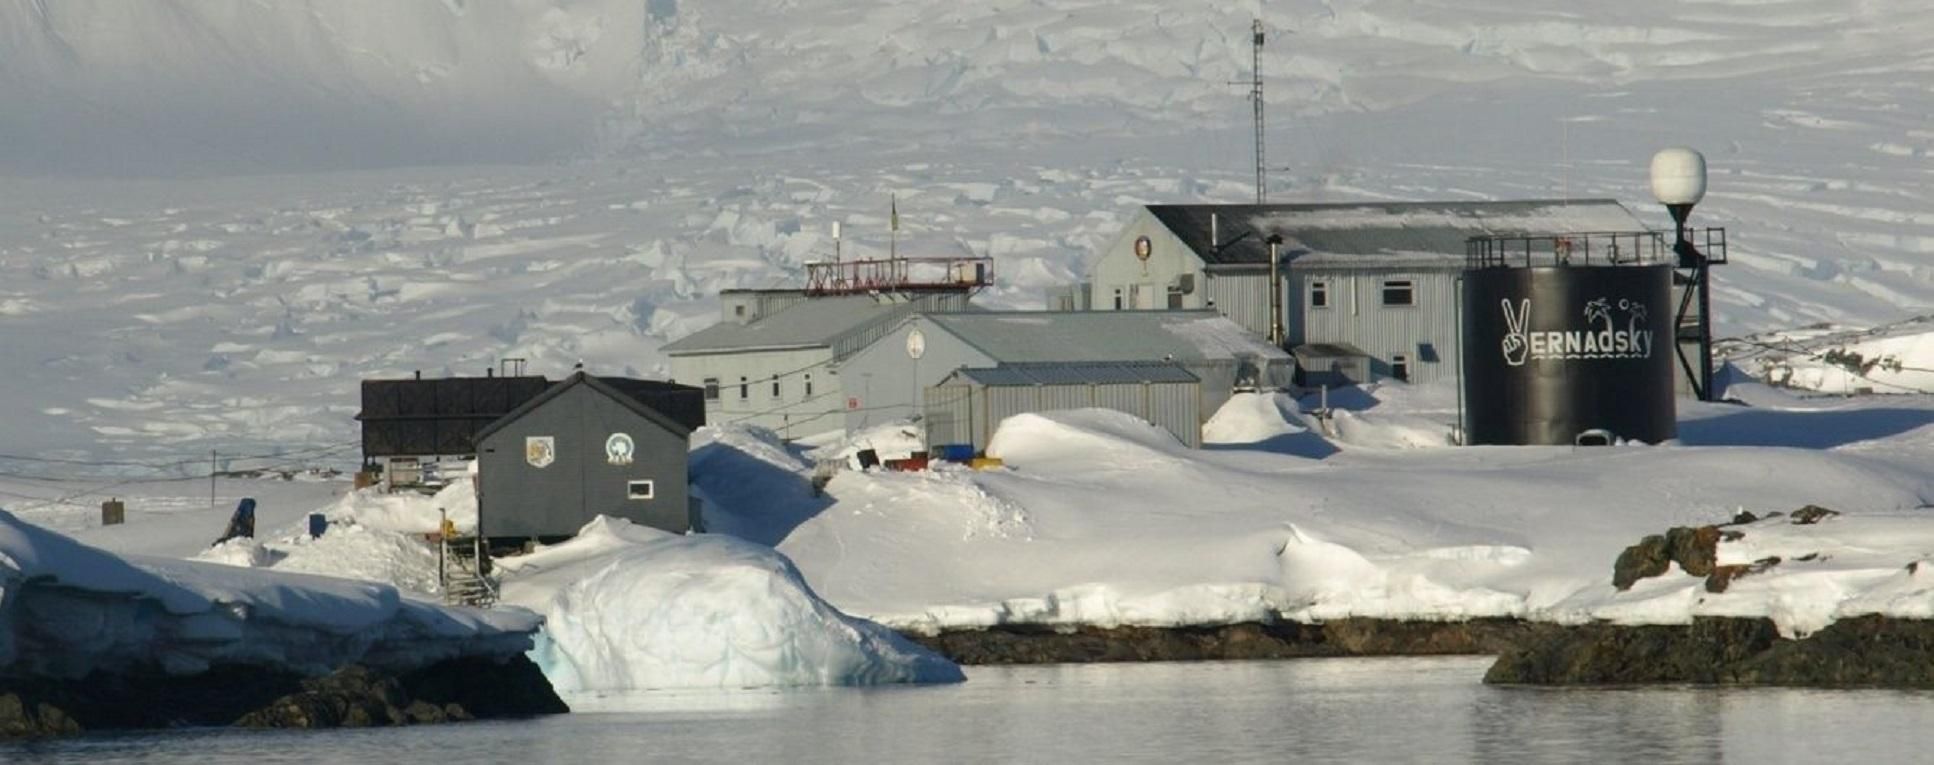 Украинская экспедиция таки смогла отправиться в Антарктиду: полярники уже в Чили